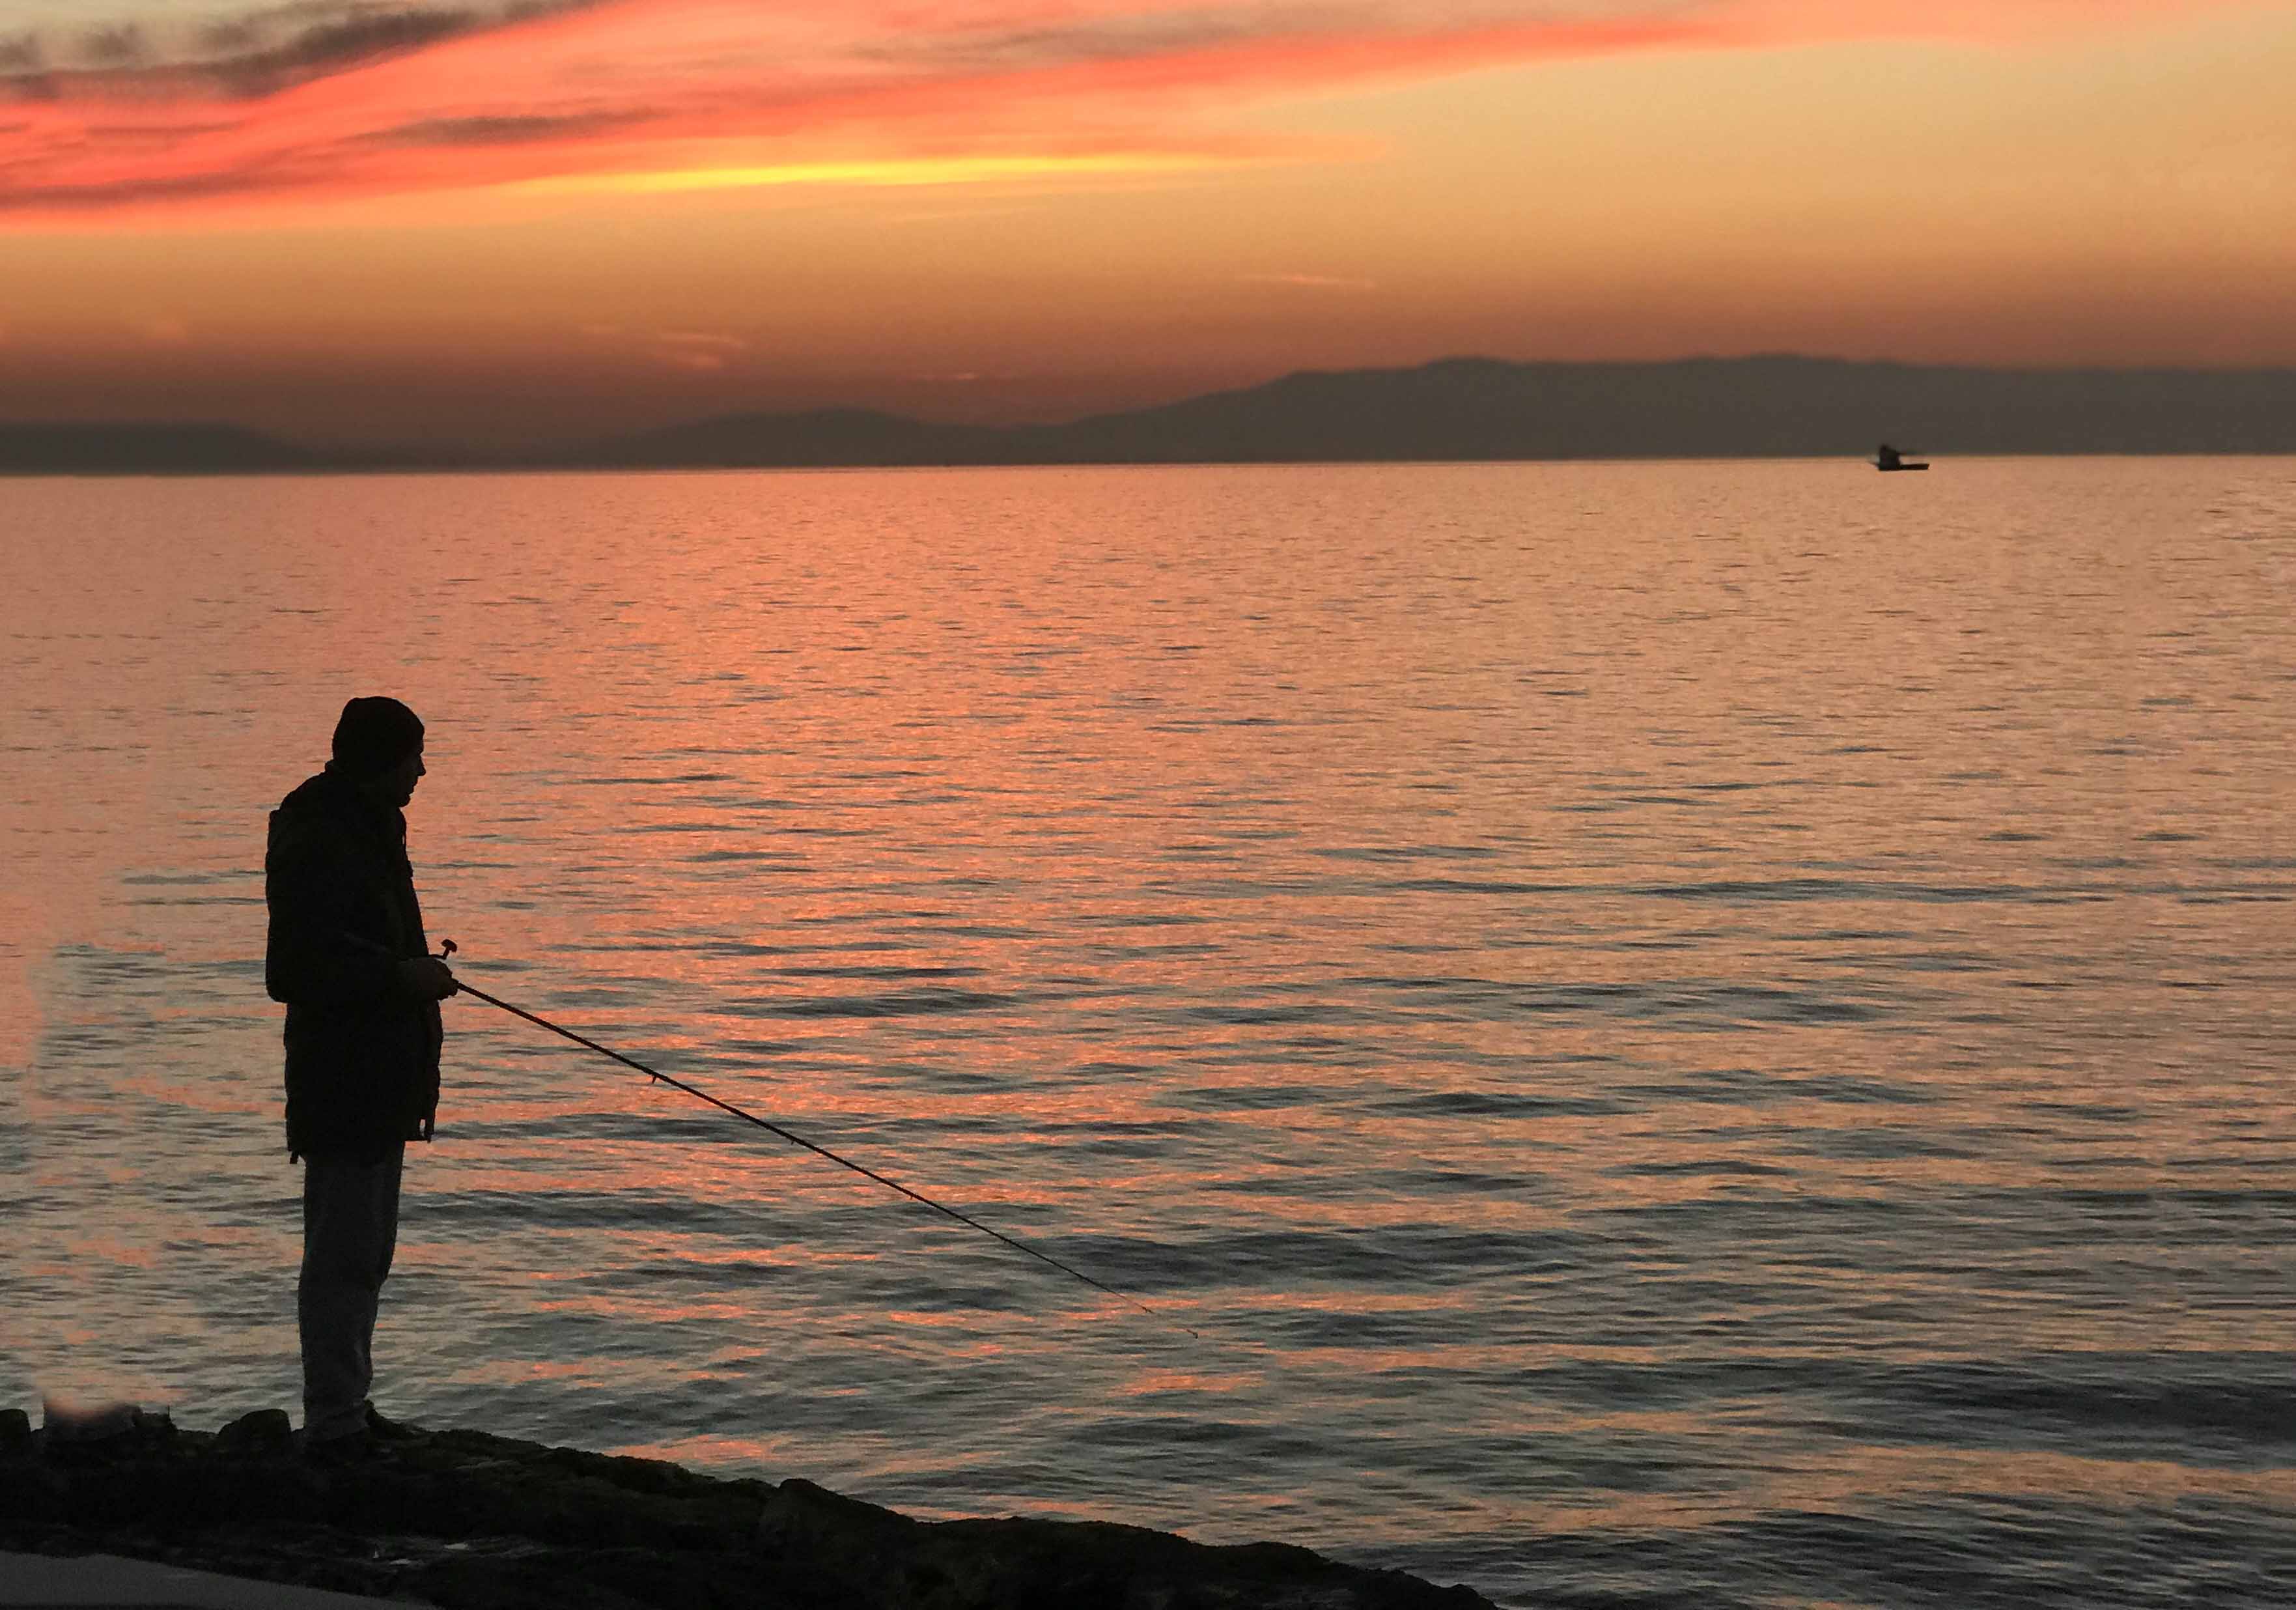 Fishing during dusk on a vast lake.